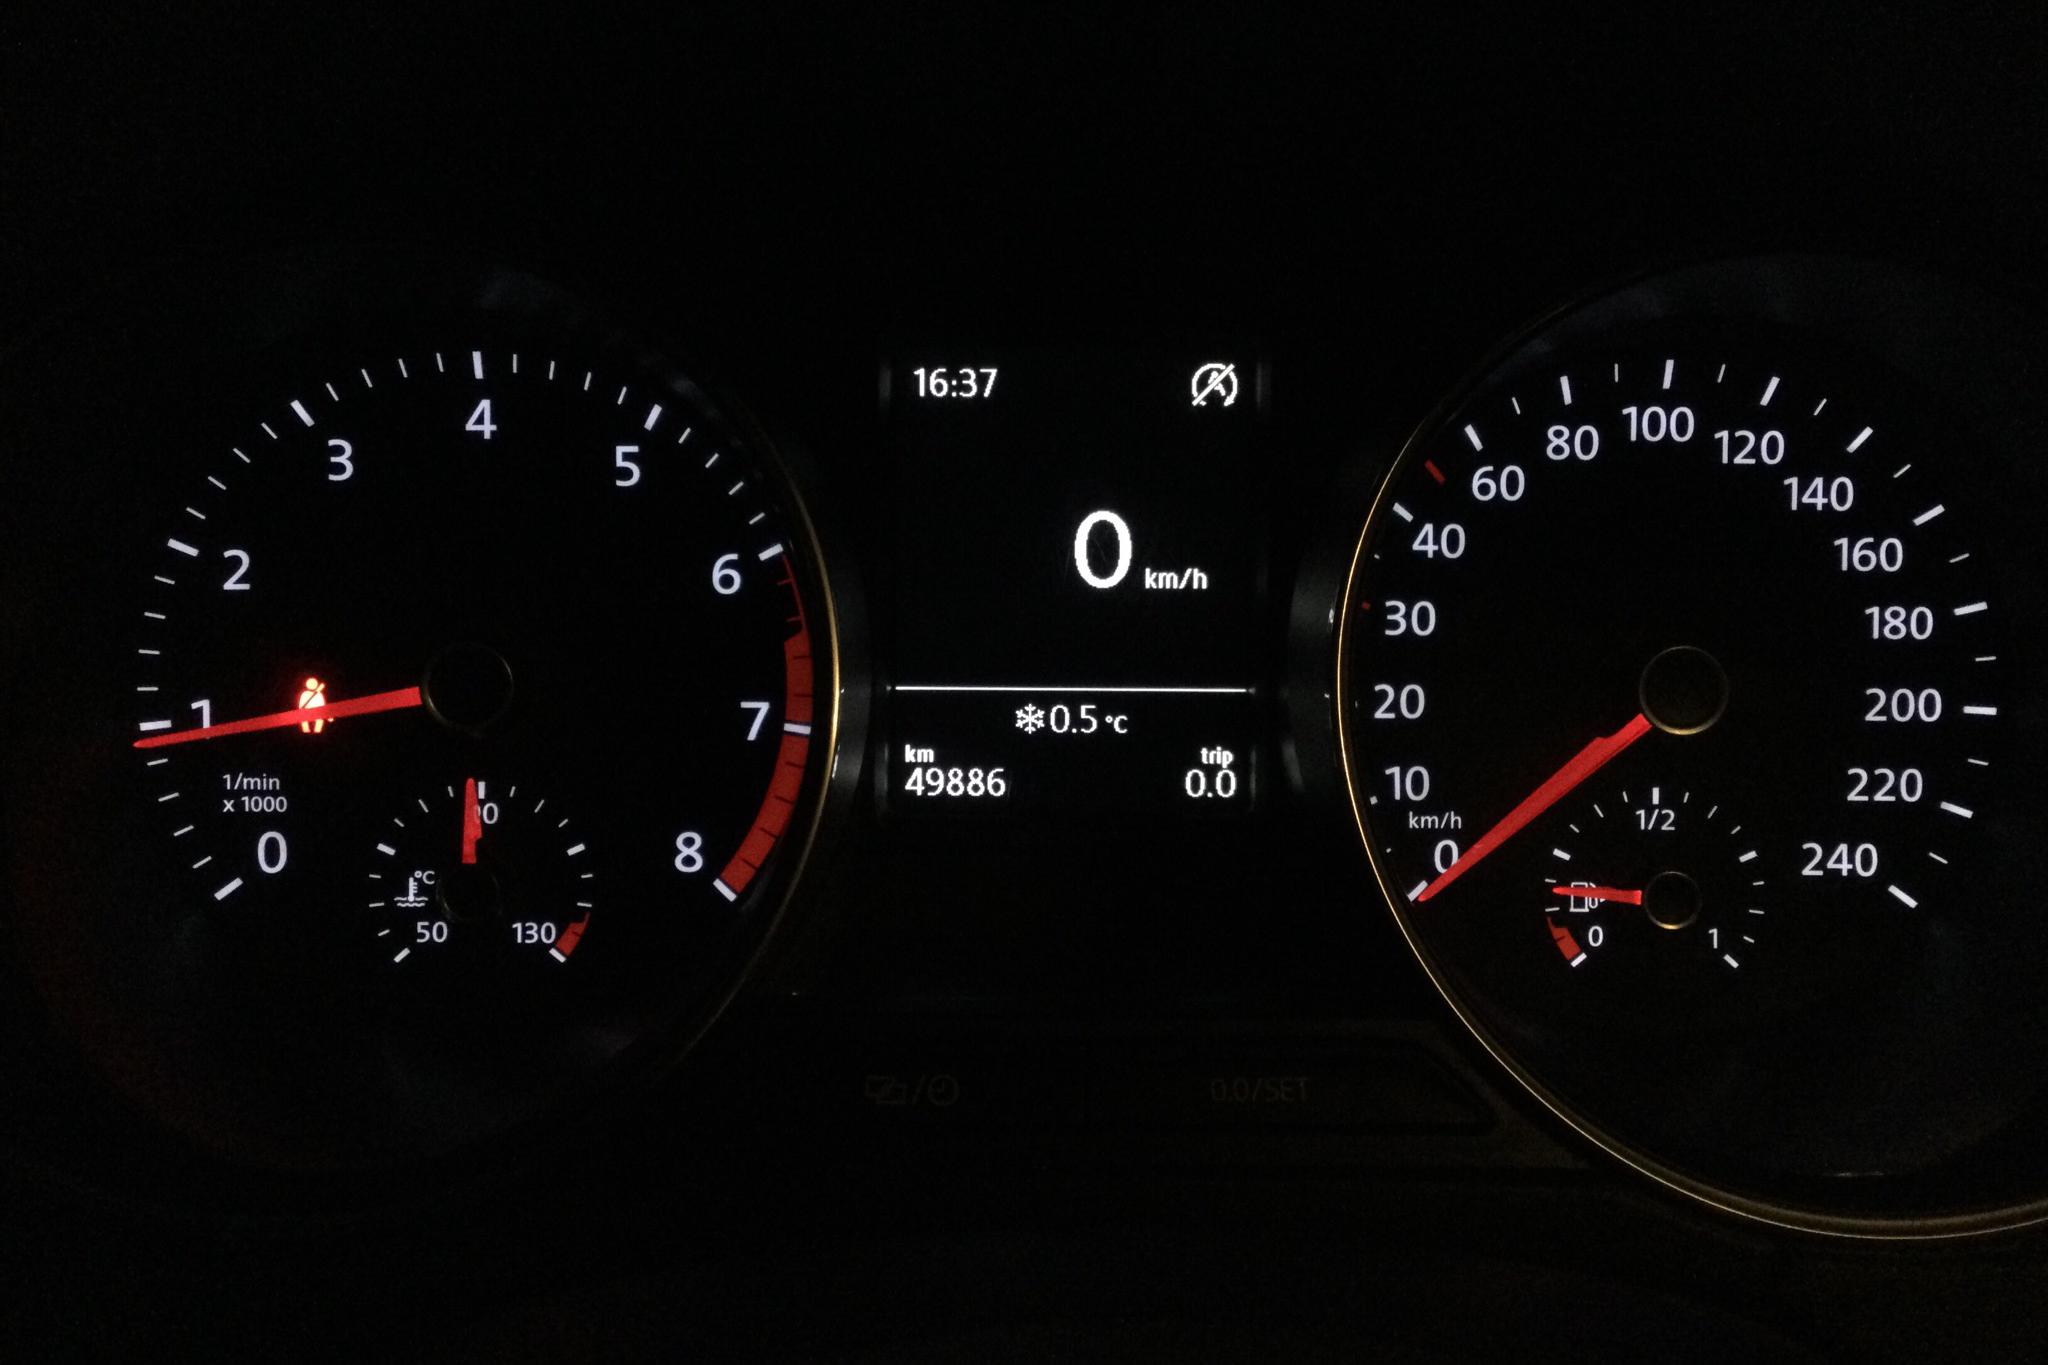 VW Polo 1.2 TSI 5dr (90hk) - 49 880 km - Manual - black - 2015